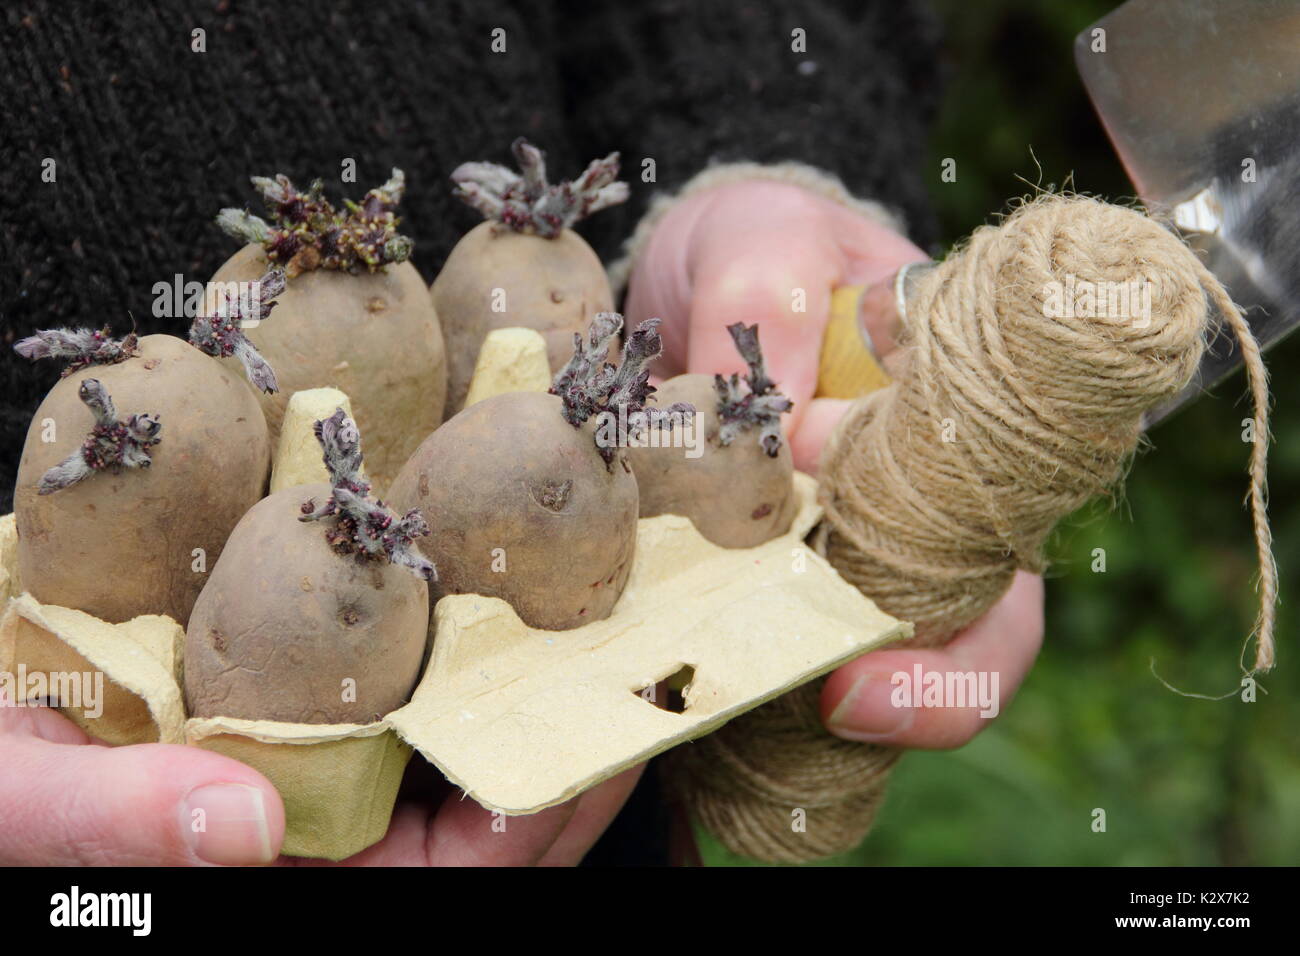 Solanum tuberosum. Les pommes de terre de semence dénoyautées dans une boîte à œufs recyclée prête à être plantées - printemps, Royaume-Uni Banque D'Images